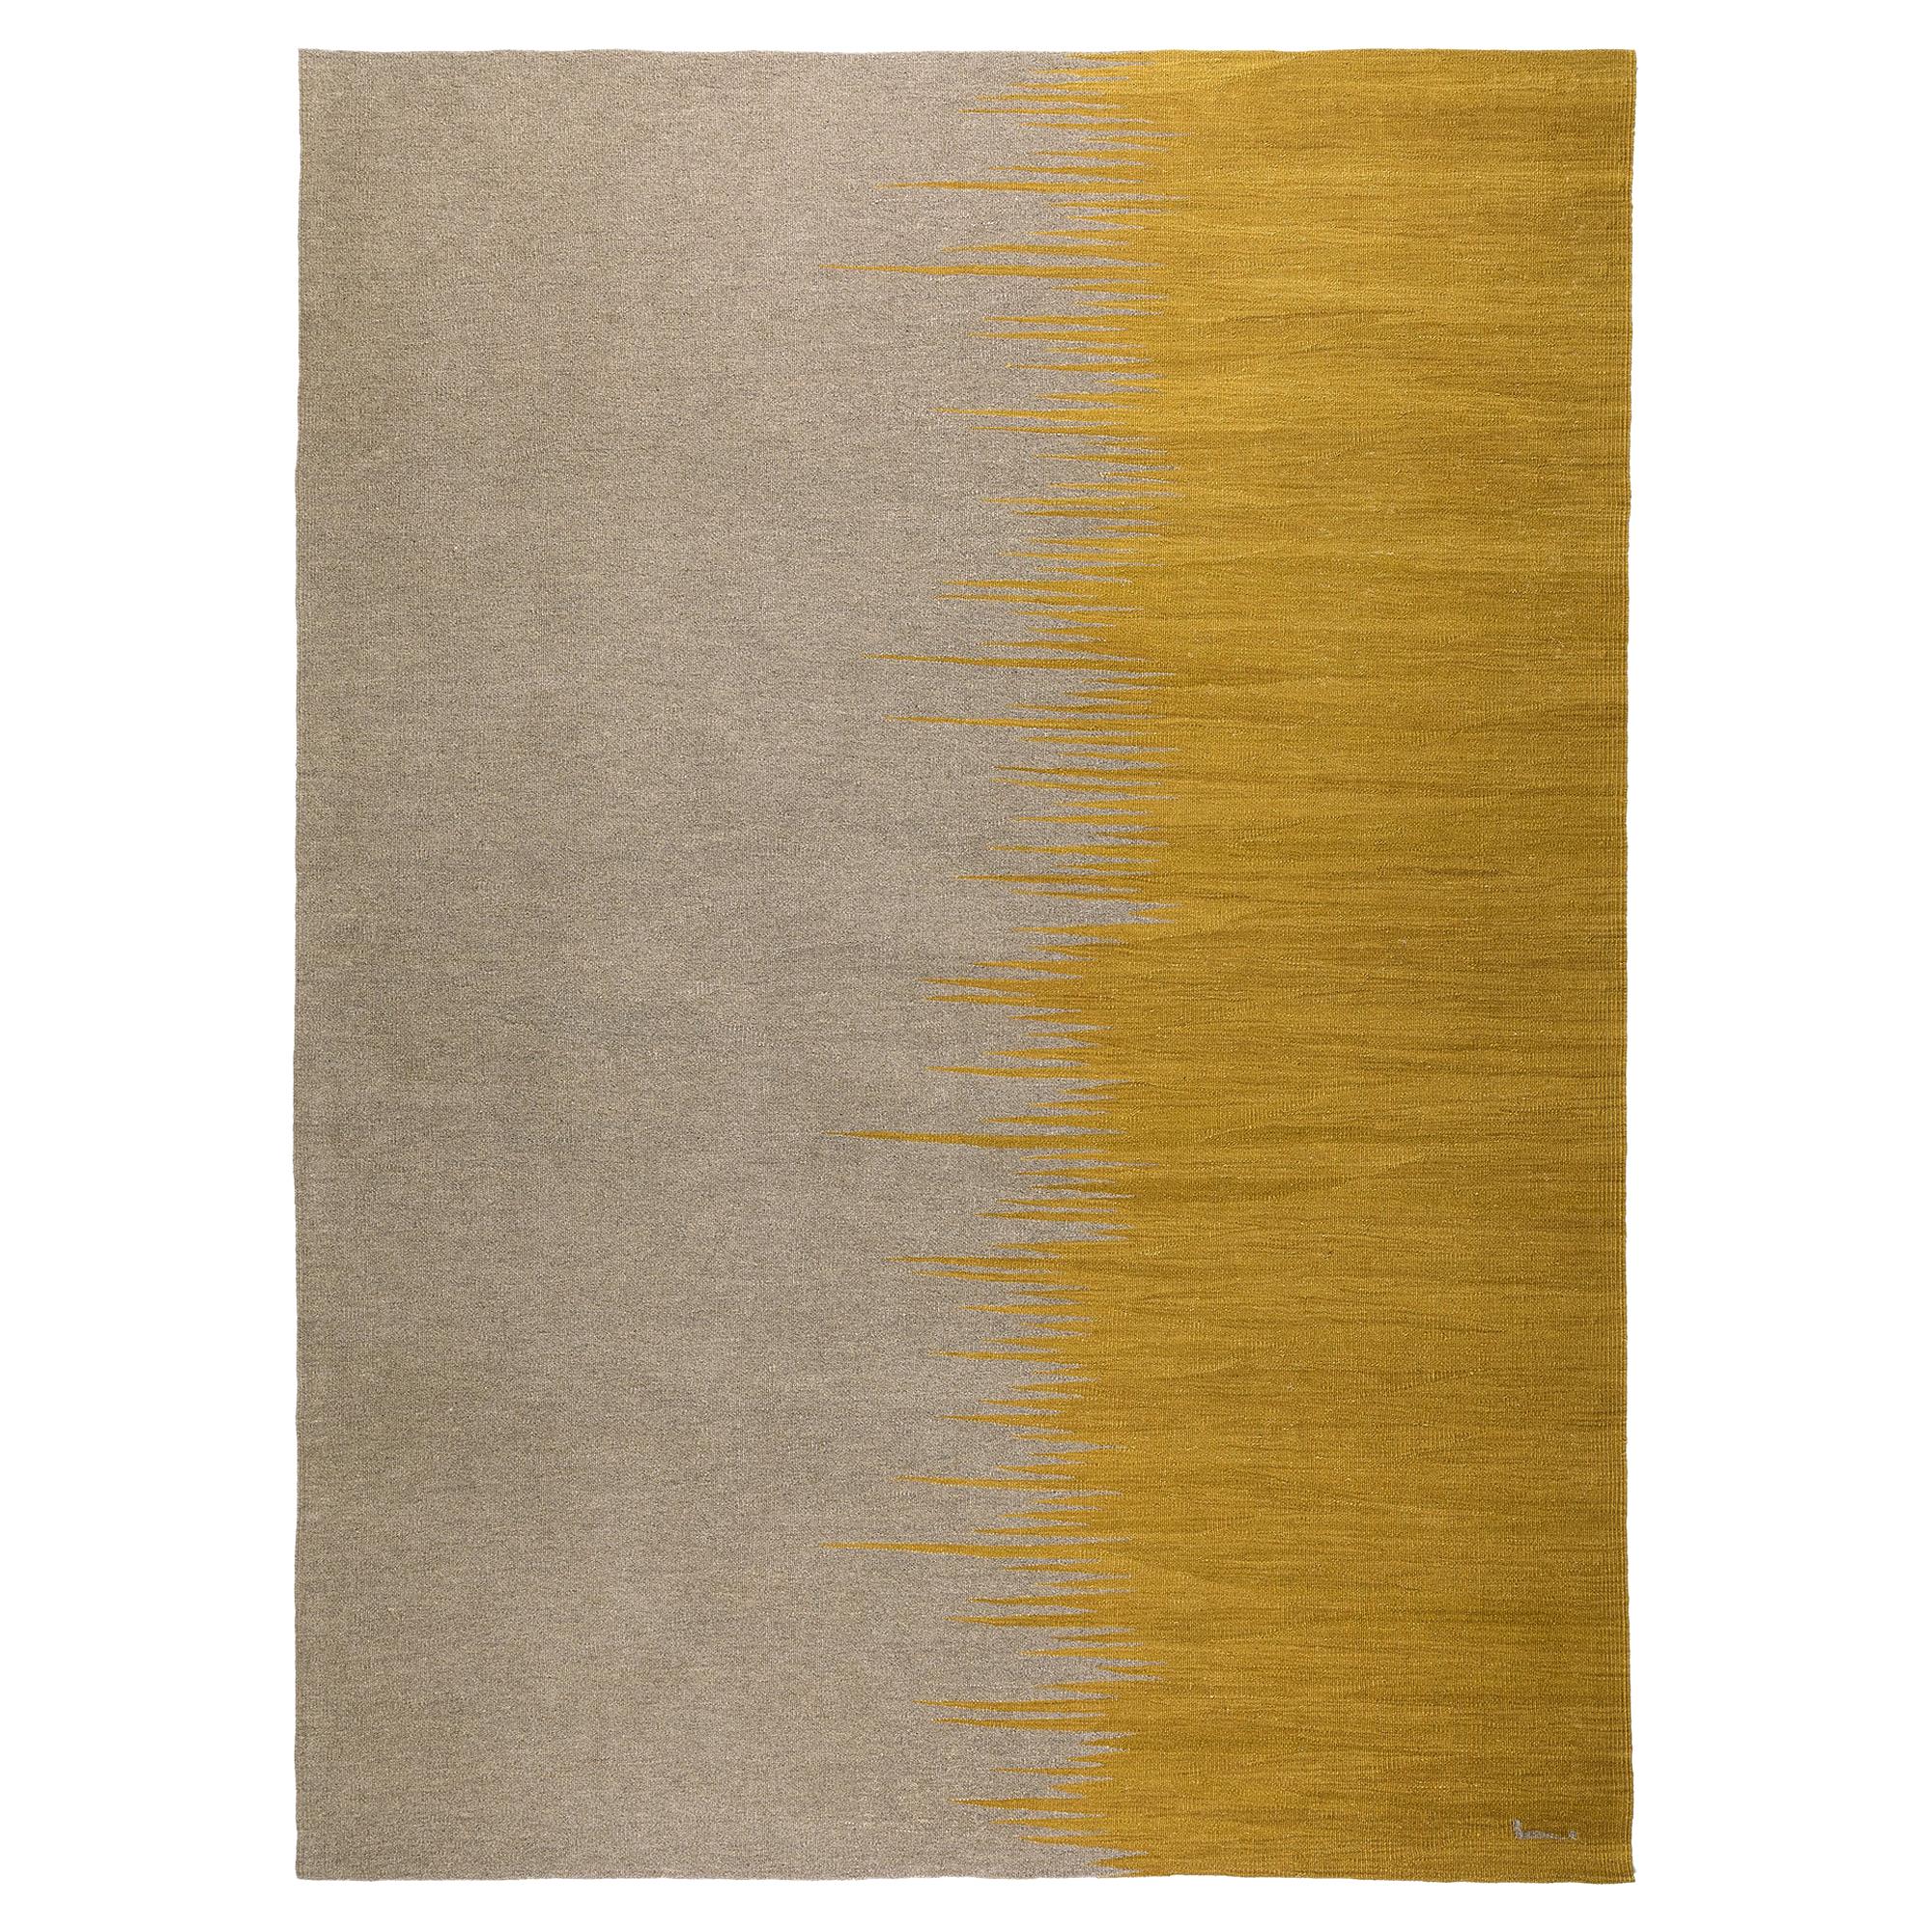 Tapis Kilim moderne contemporain Yakamoz No 2, en laine tissée à la main gris moutarde-arthy